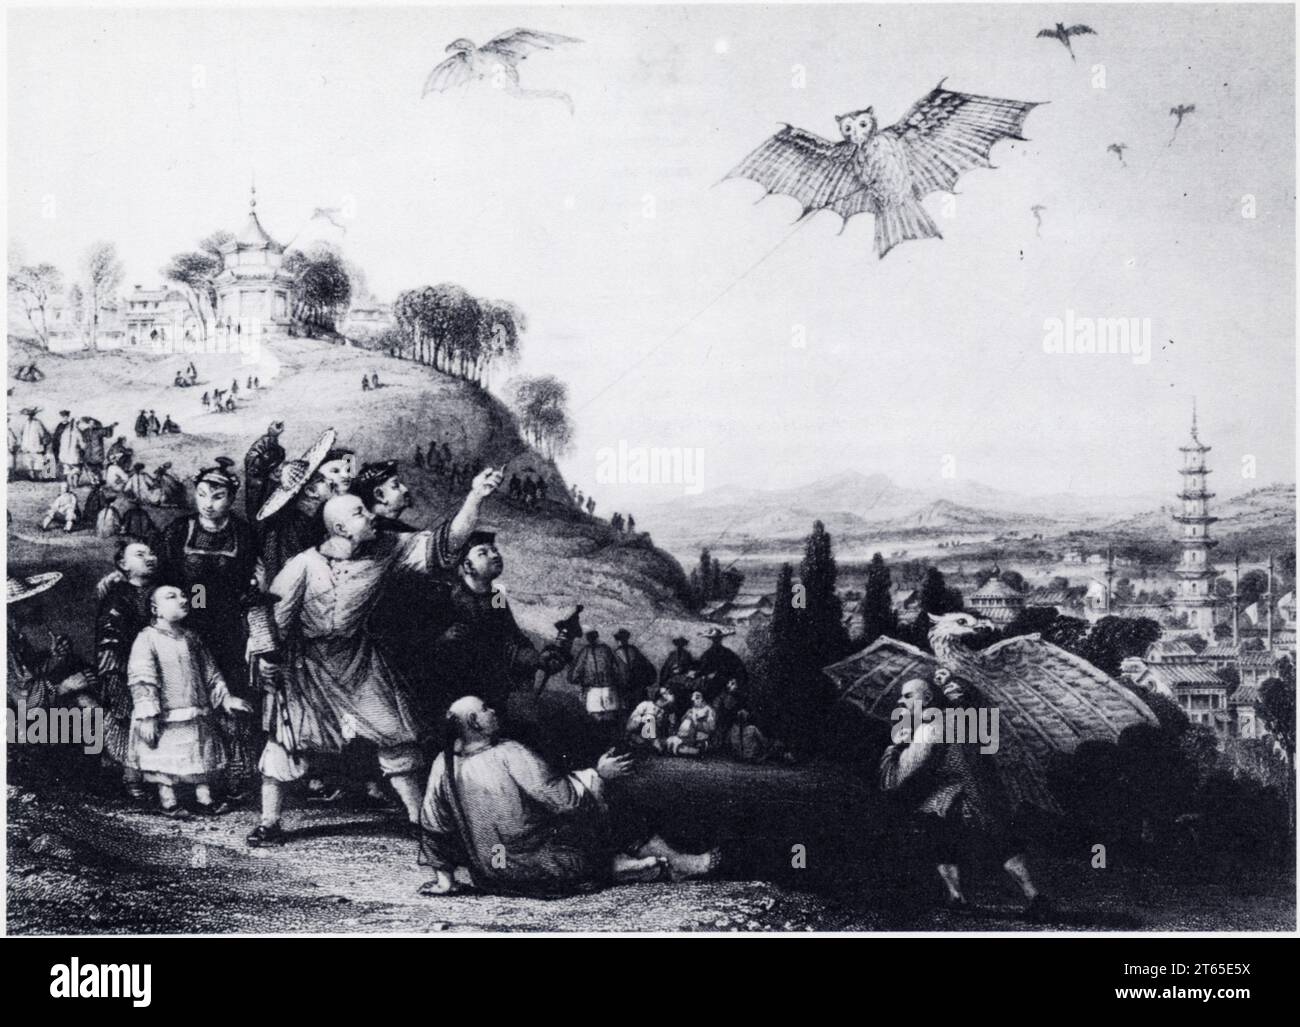 Lancement d'un modèle de cerf-volant au dessus de la ville de Haikwa en Chine. Gravure. XIX ème siècle Stock Photo